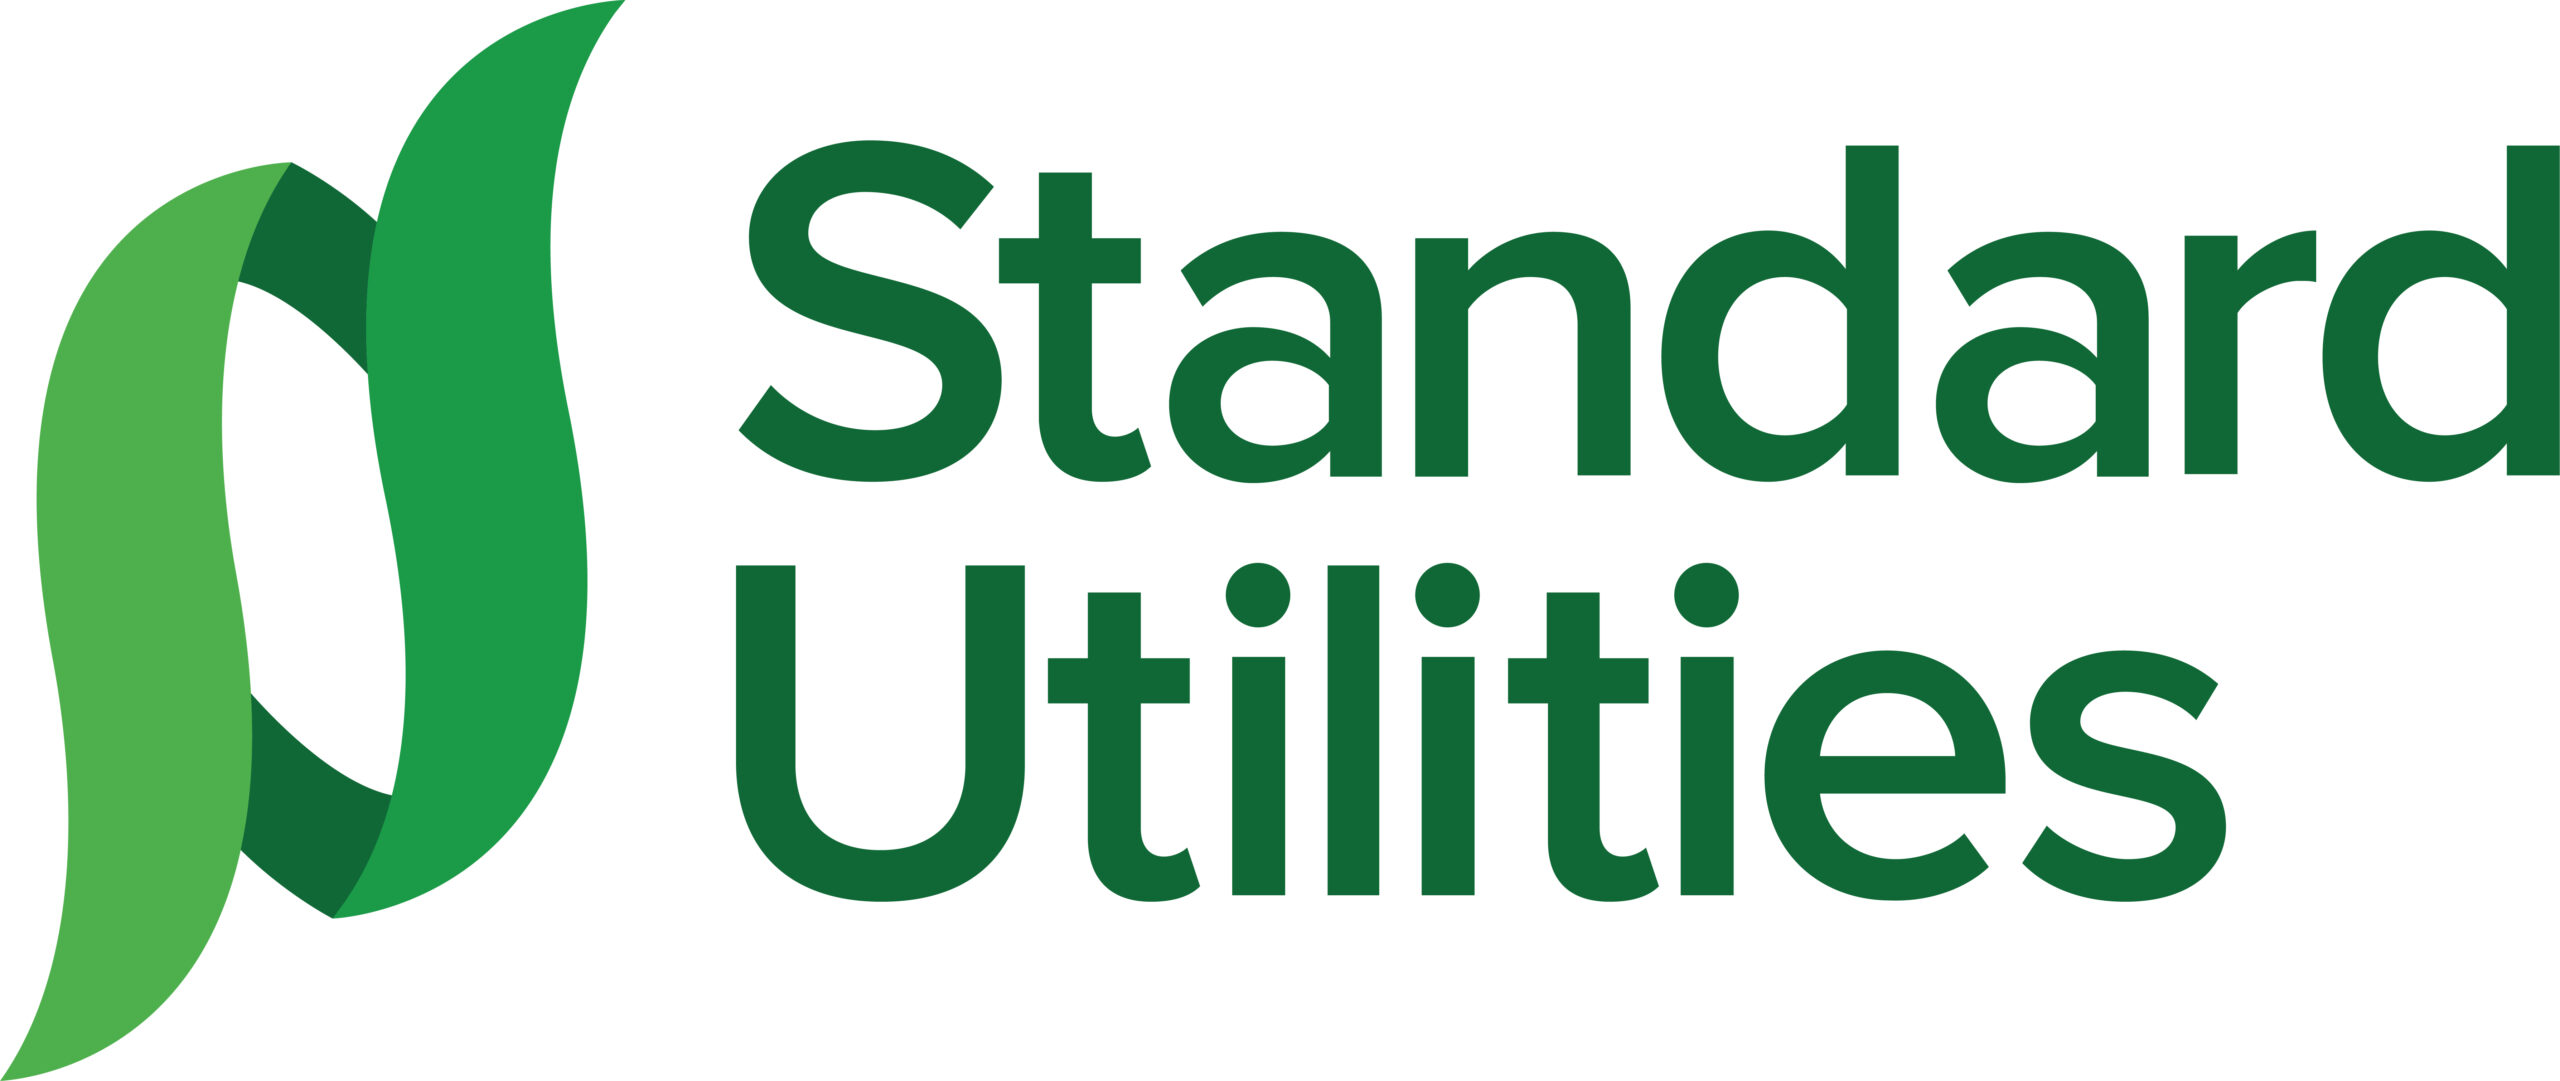 6 Standard Utilities